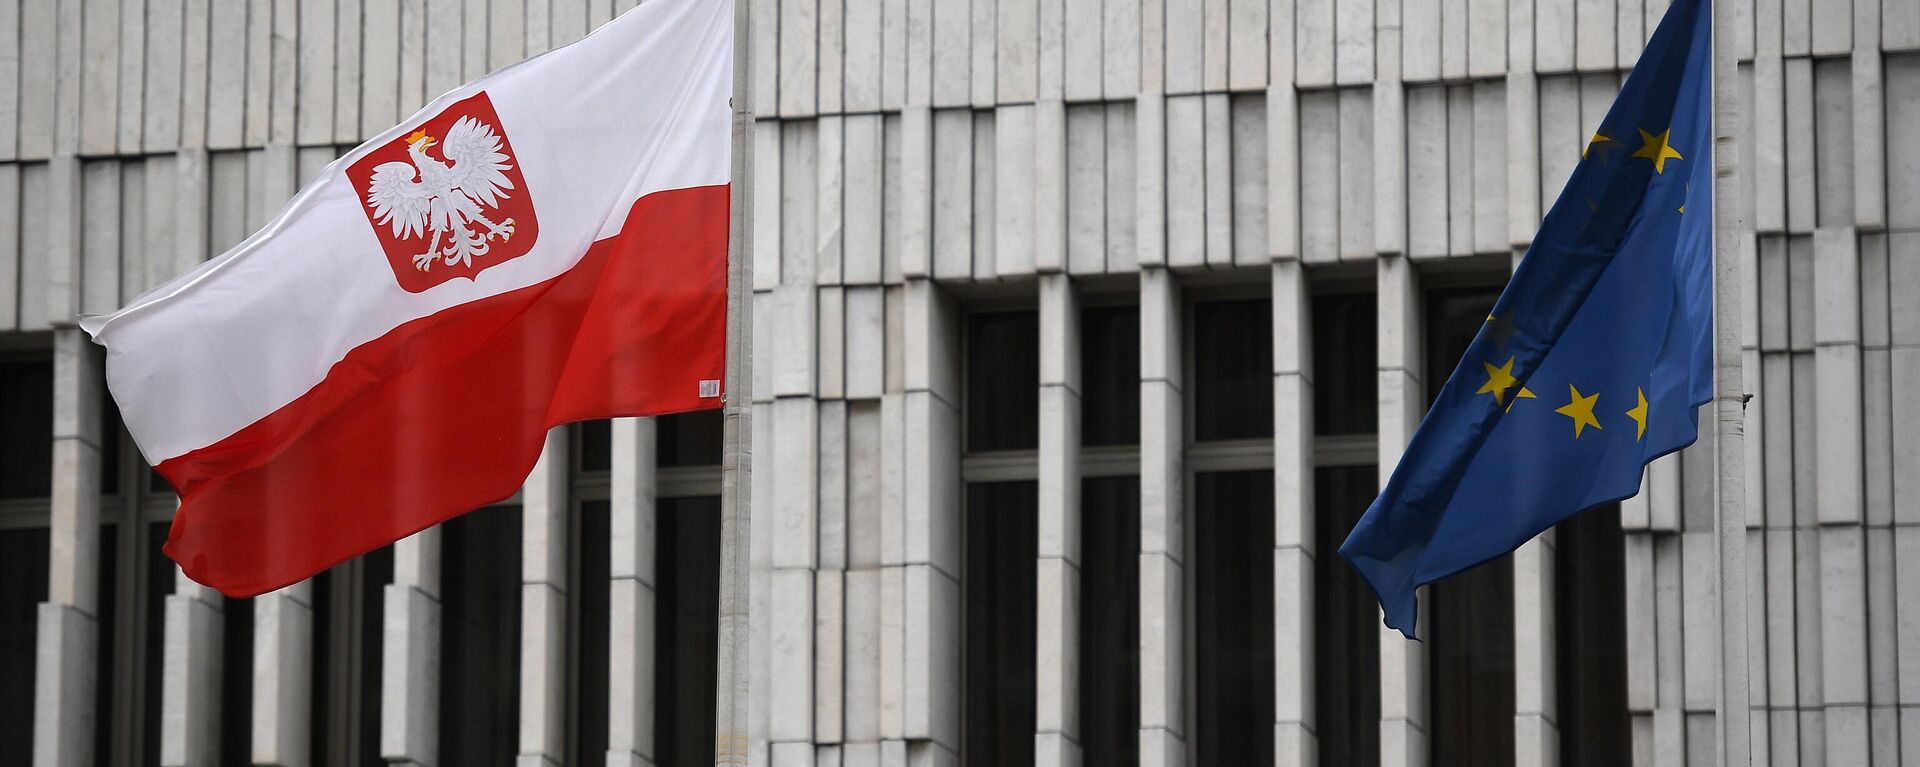 Ba Lan cố thuyết phục NATO tung toàn bộ lực lượng (NATO Ba Lan) là một trong những nỗ lực quan trọng của Ba Lan trong việc tăng cường quân sự và đảm bảo an ninh quốc gia. Tại đây, Ba Lan đang đưa ra những lý do cụ thể và thuyết phục để được NATO đồng ý bố trí thêm lực lượng tại đất nước này, giúp bảo vệ an ninh chung trên toàn thế giới.